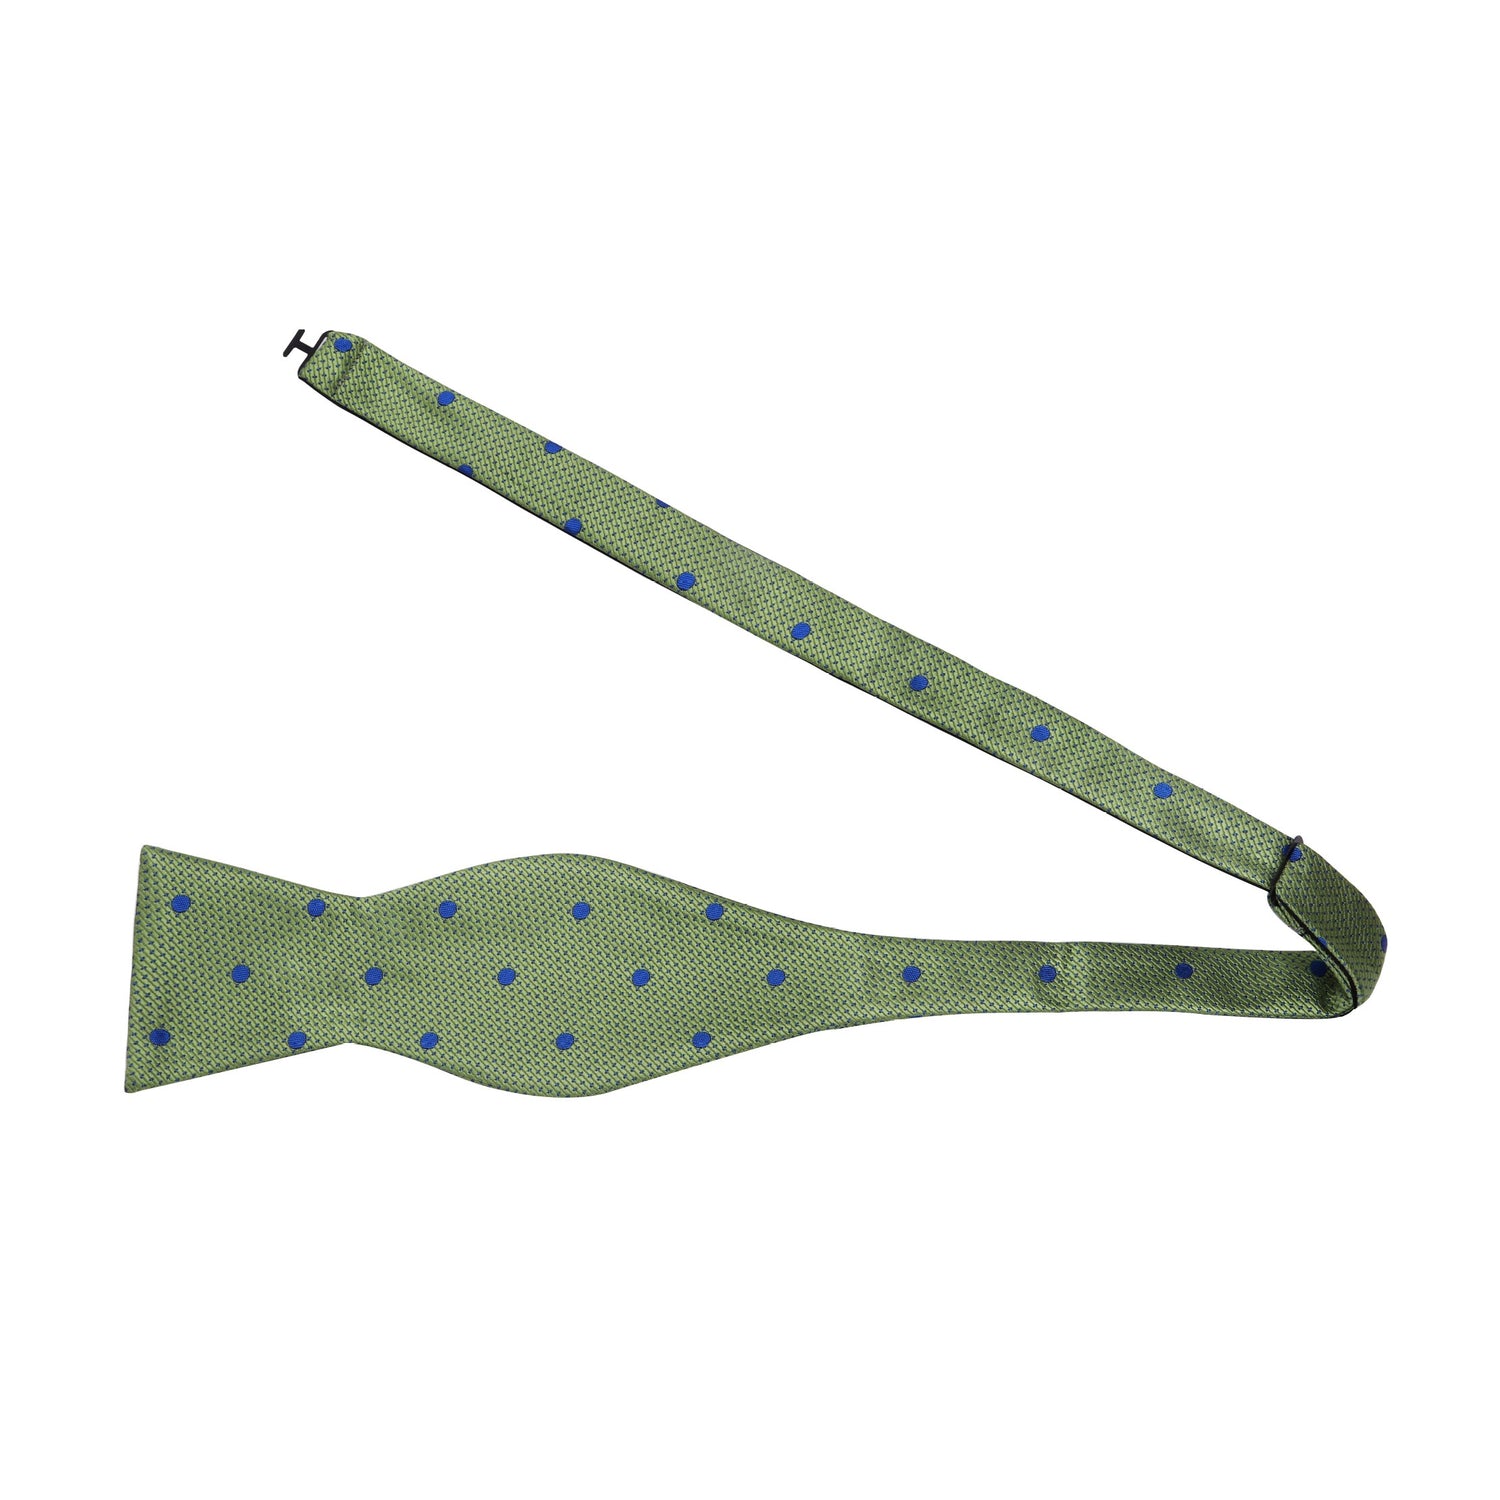 A Green, Blue Polka Dot Pattern Self Tie Bow Tie Untied